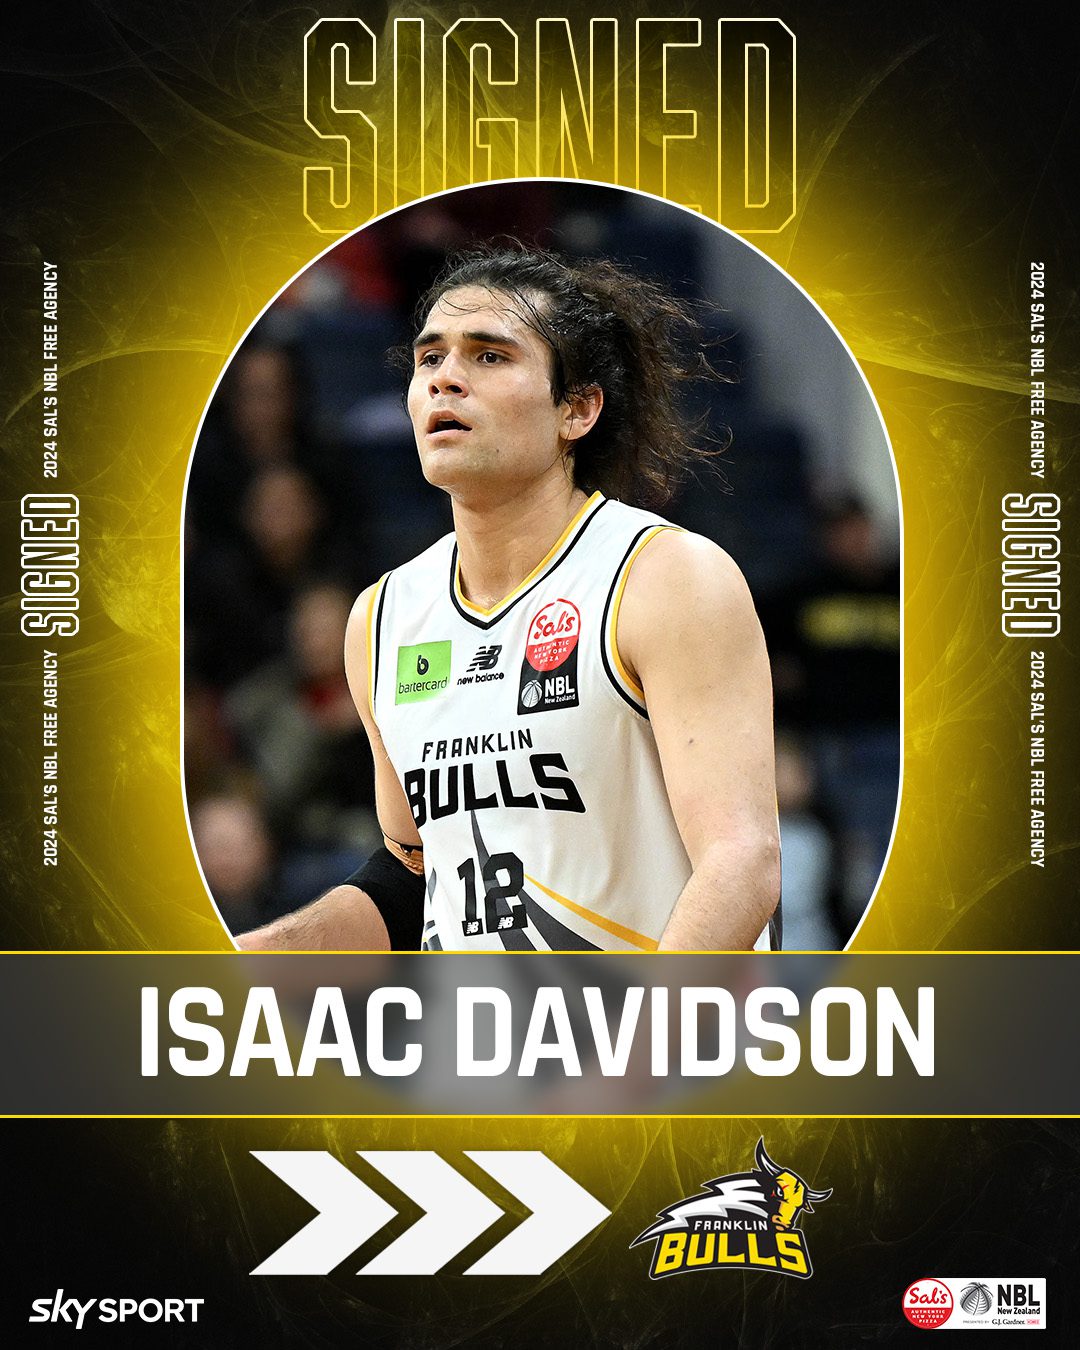 Isaac Davidson